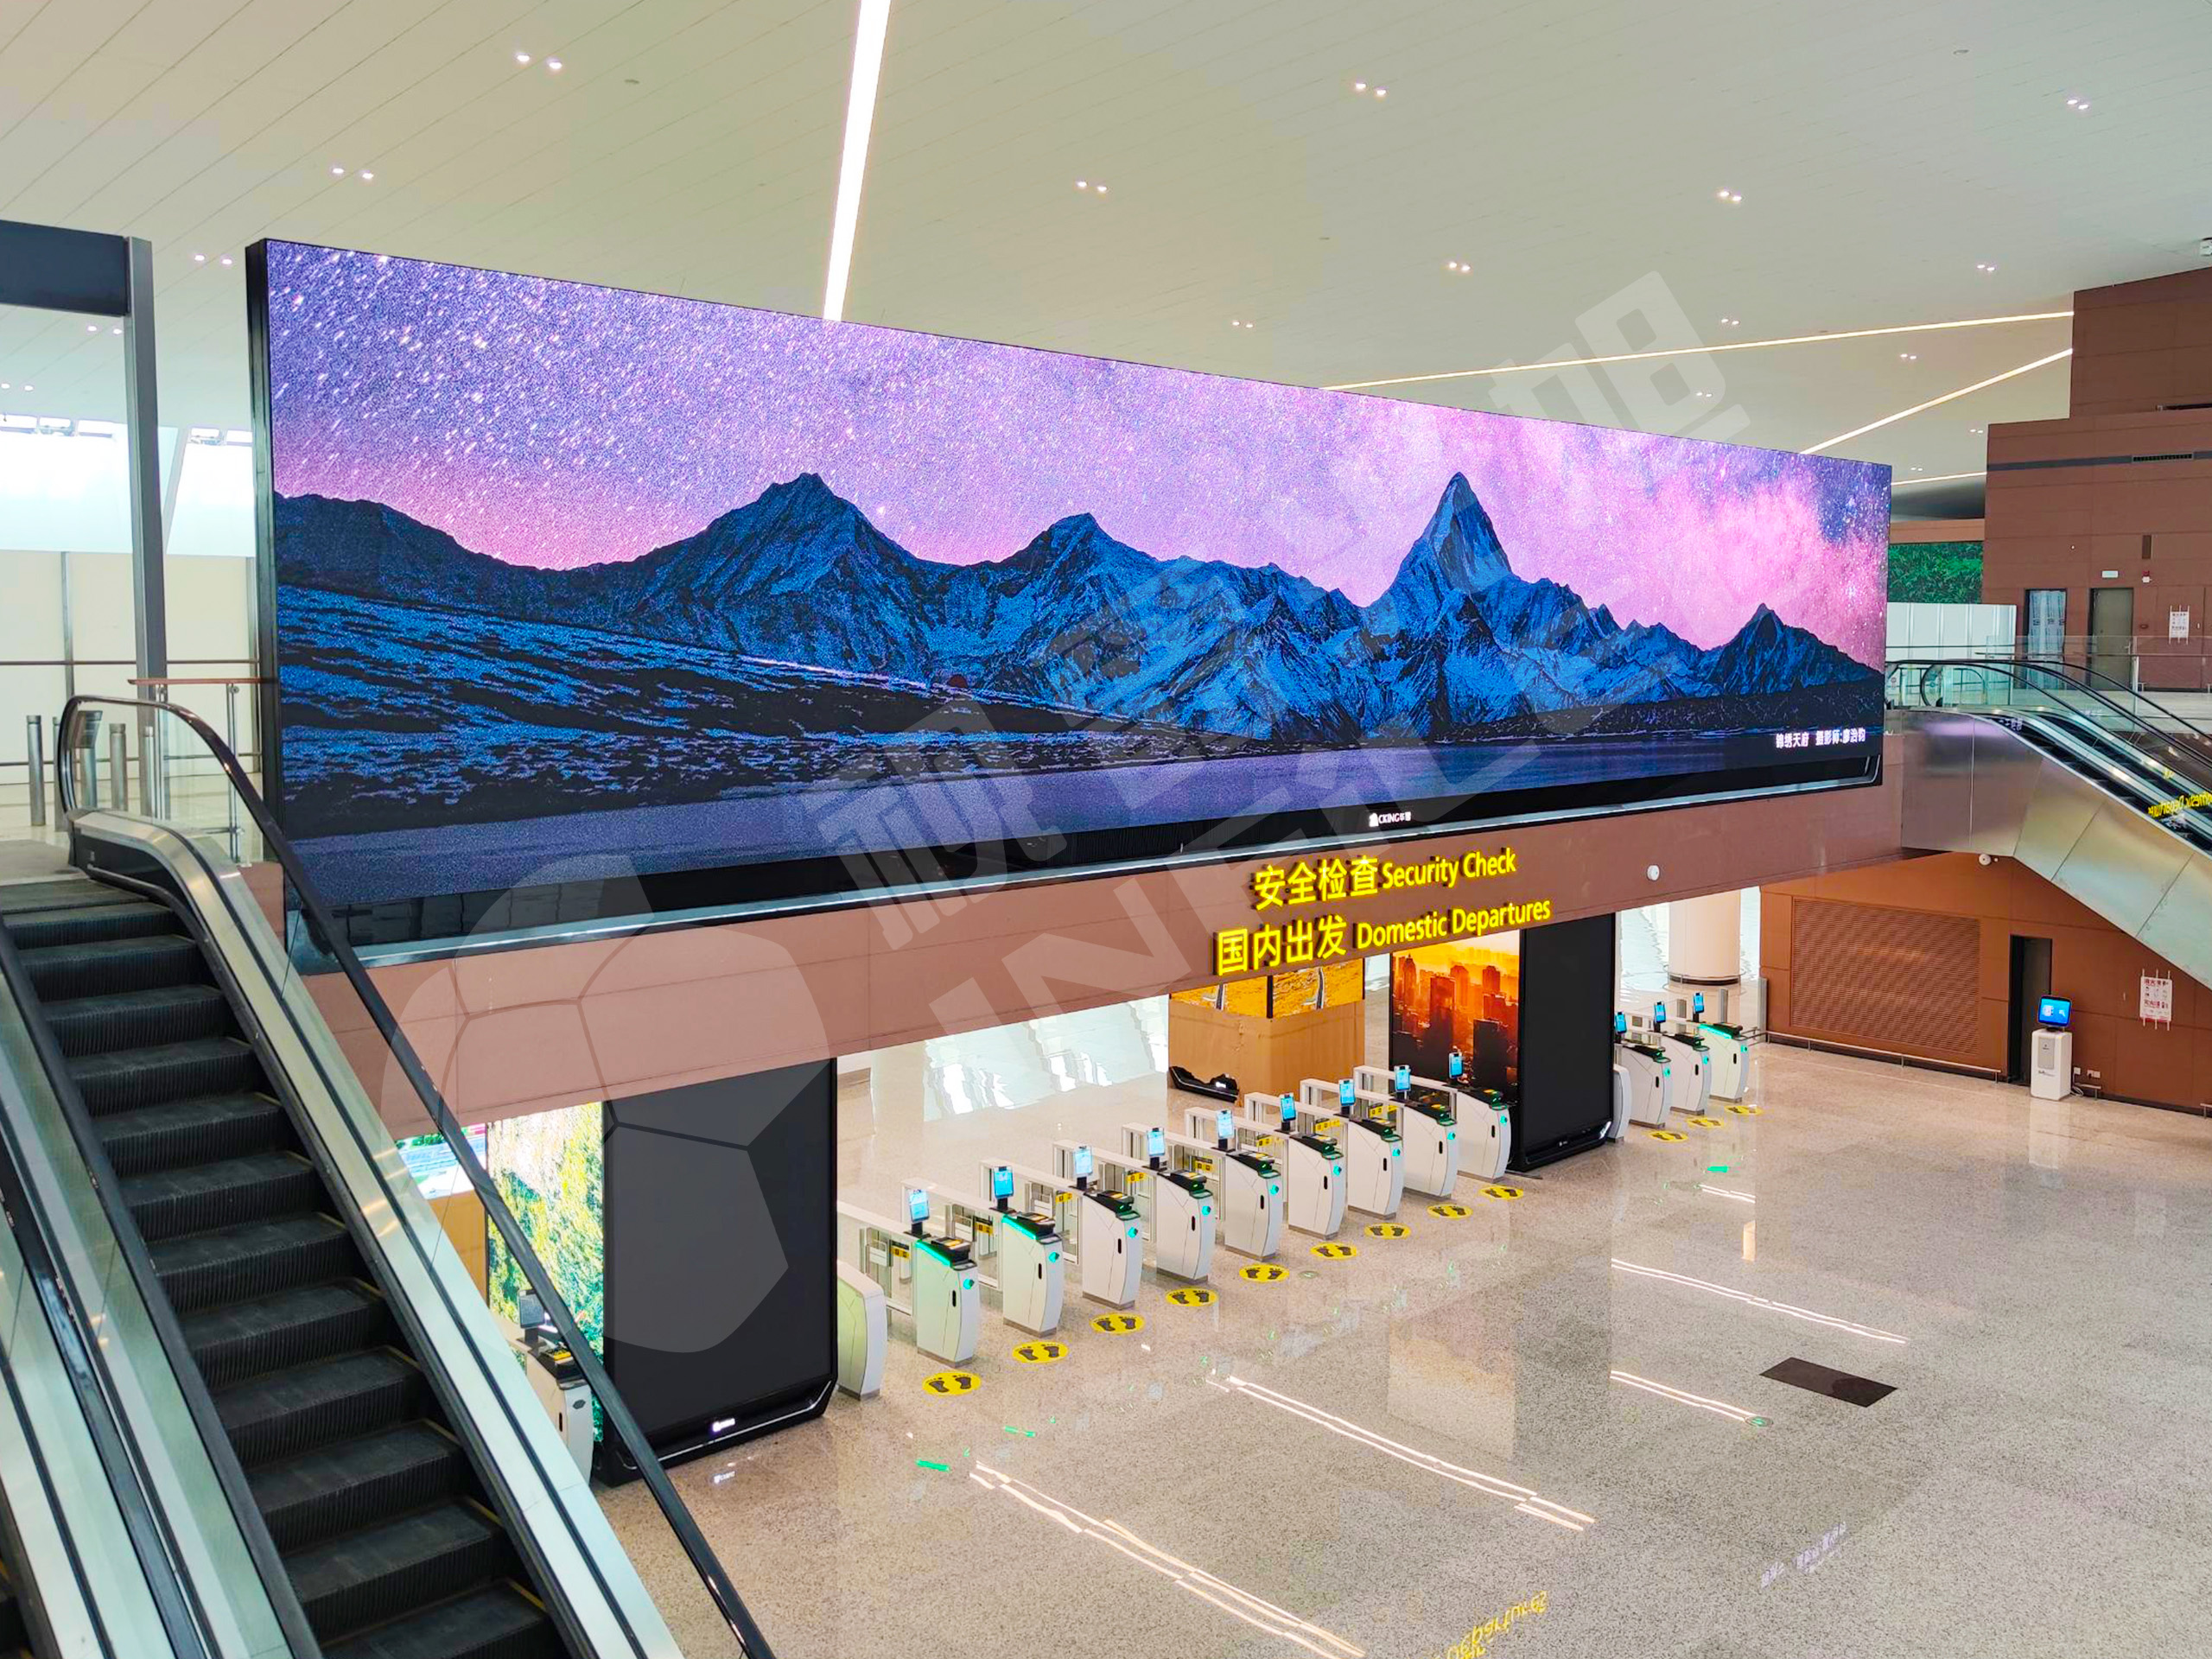 视爵光旭以天府机场切实需求为出发点，采用领秀系列搭建T2航站楼出发大厅超高清LED显示大屏